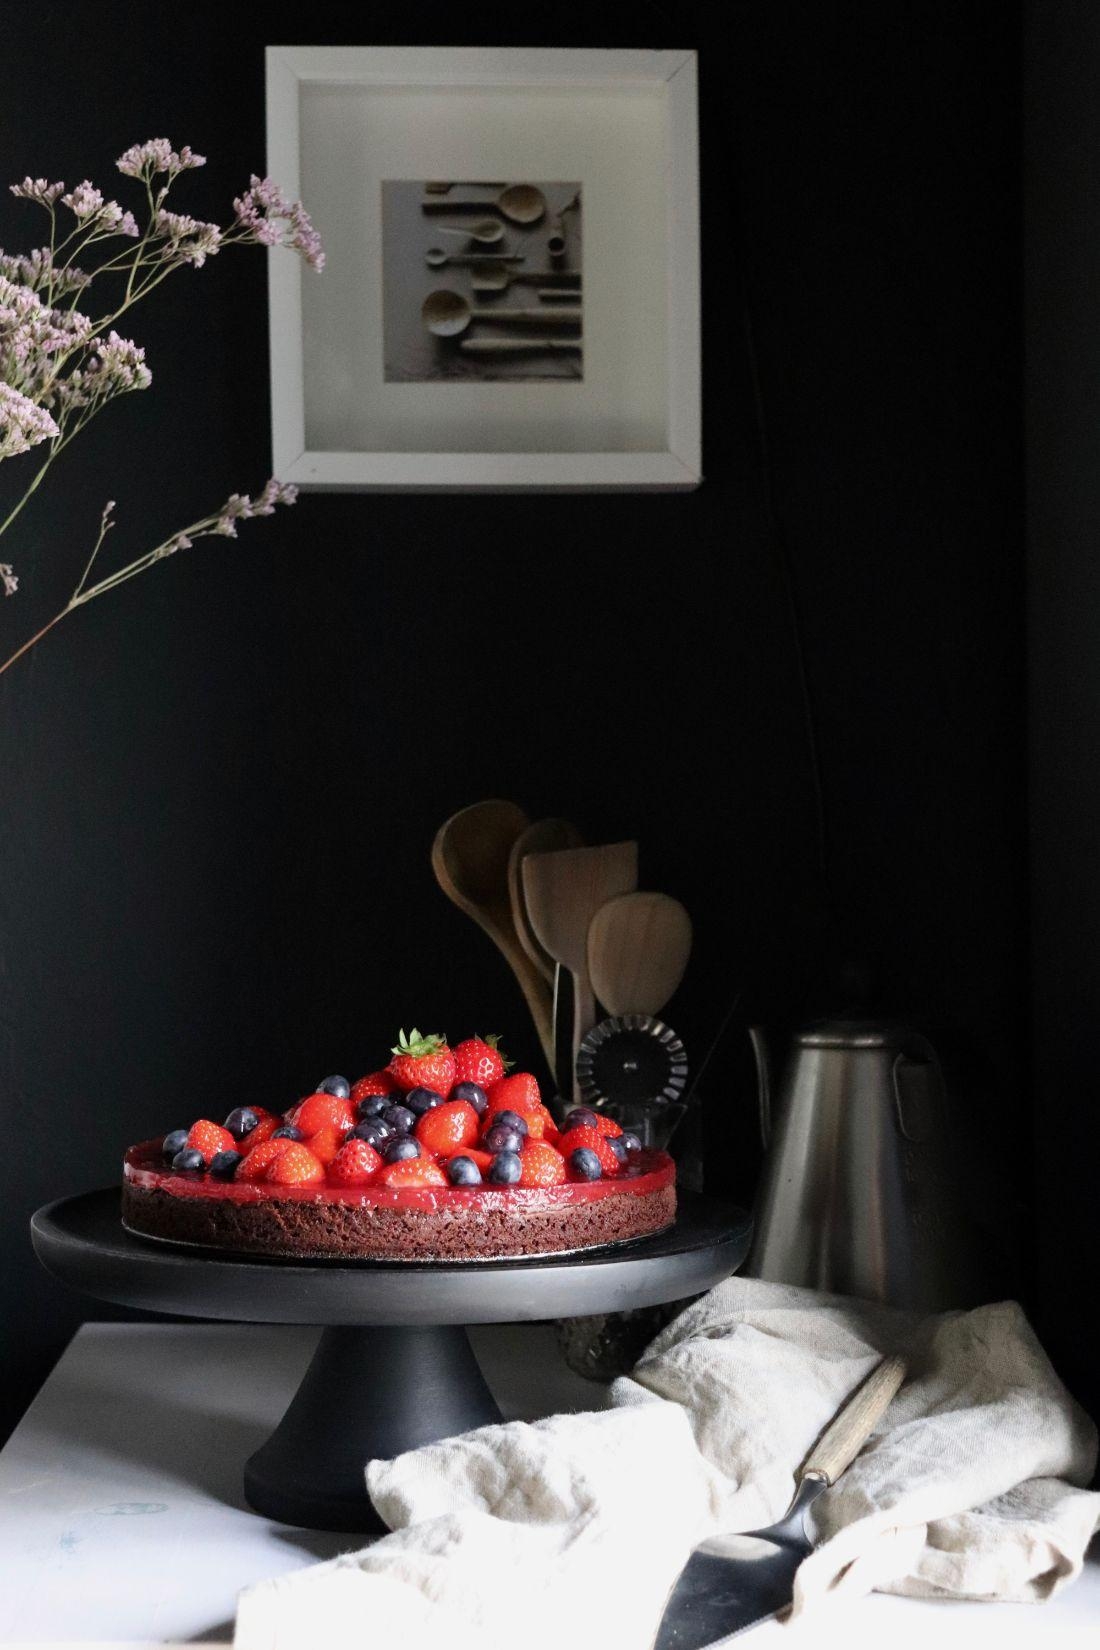 Kontrast, in der sonst komplett schwarzen Küche.

#brittabloggt#kitchen#blackkitchen#cake

#brittabloggt#